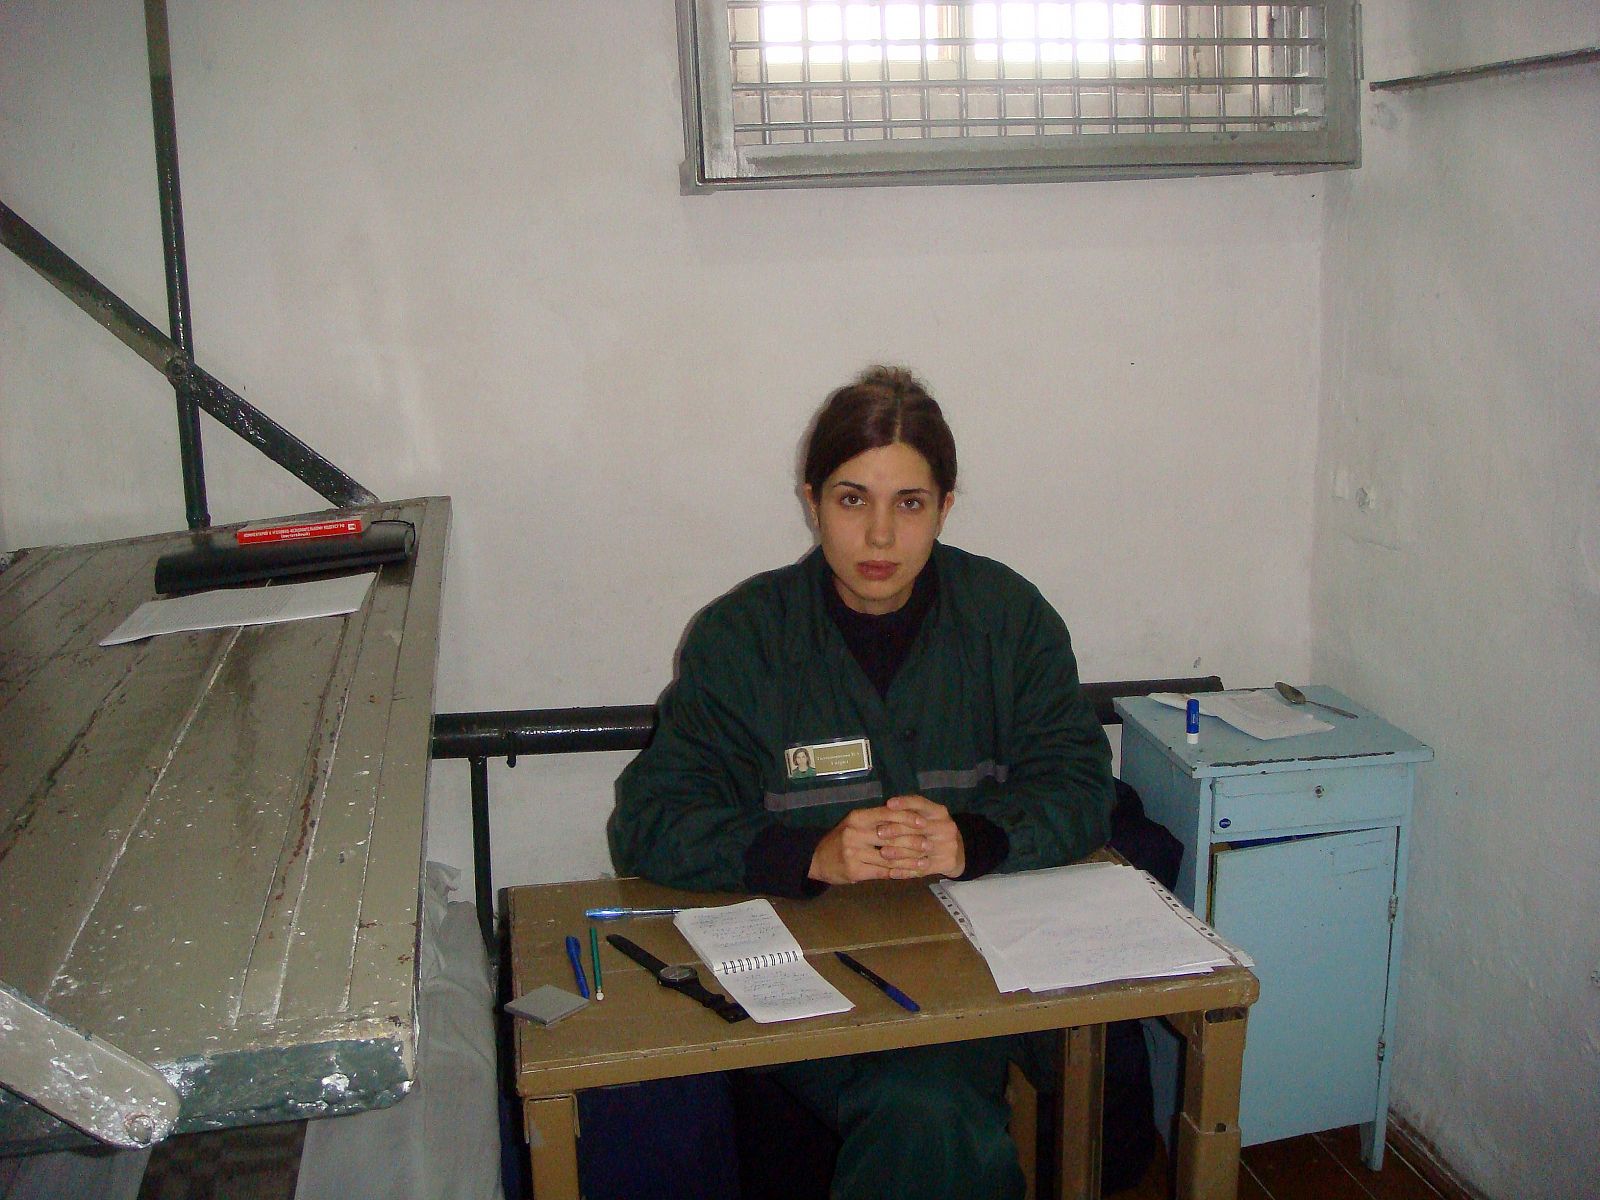 Imagen de Nadezhda Tolokonnikova, miembro de Pussy Riot en huelga de hambre, en su celda de aislamiento